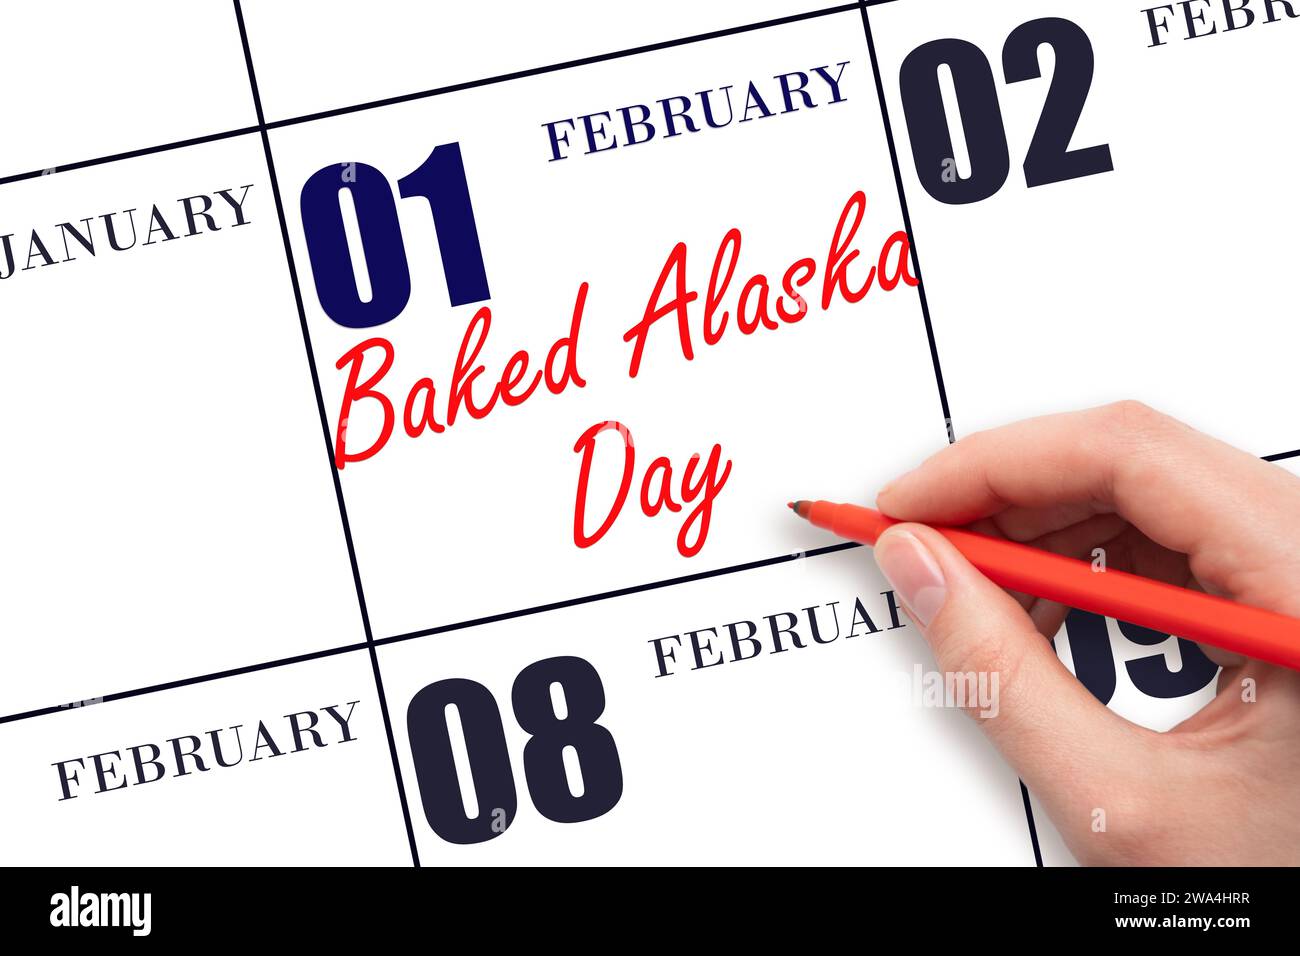 Février 1. Texte écrit à la main Baked Alaska Day le jour du calendrier. Enregistrez la date. Vacances. Concept du jour de l'année. Banque D'Images